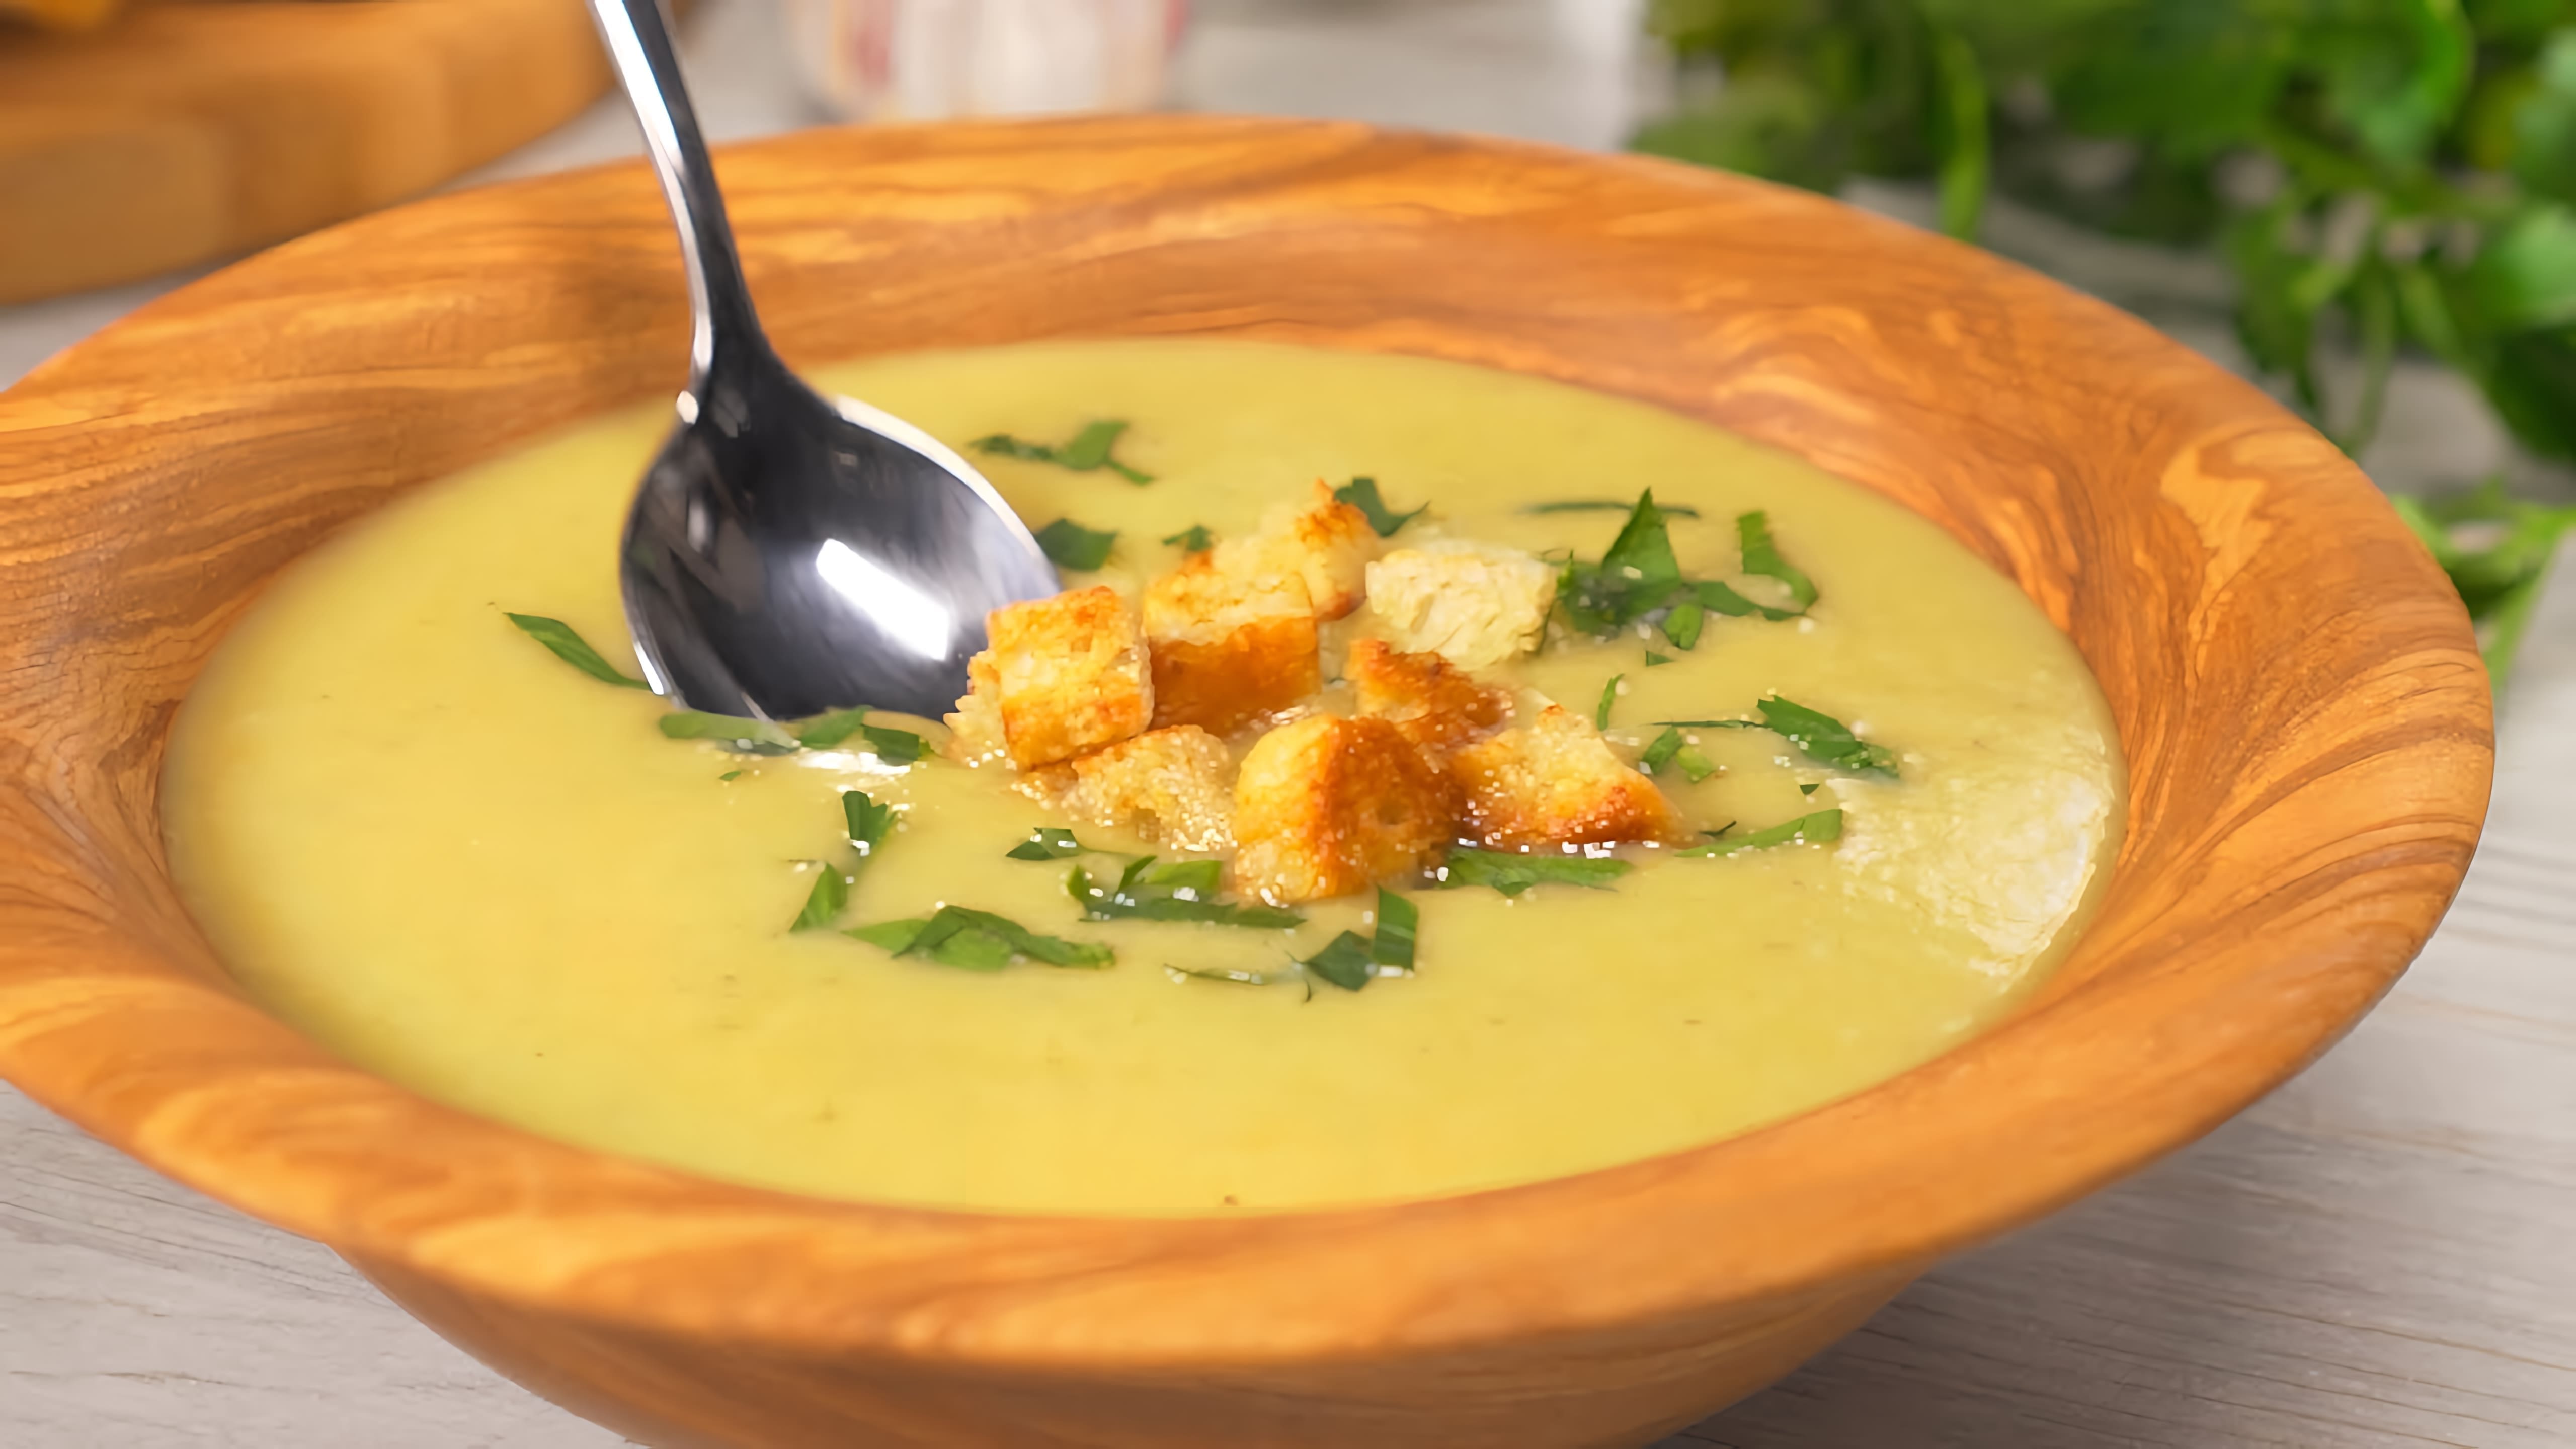 В данном видео демонстрируется рецепт приготовления итальянского чесночного супа